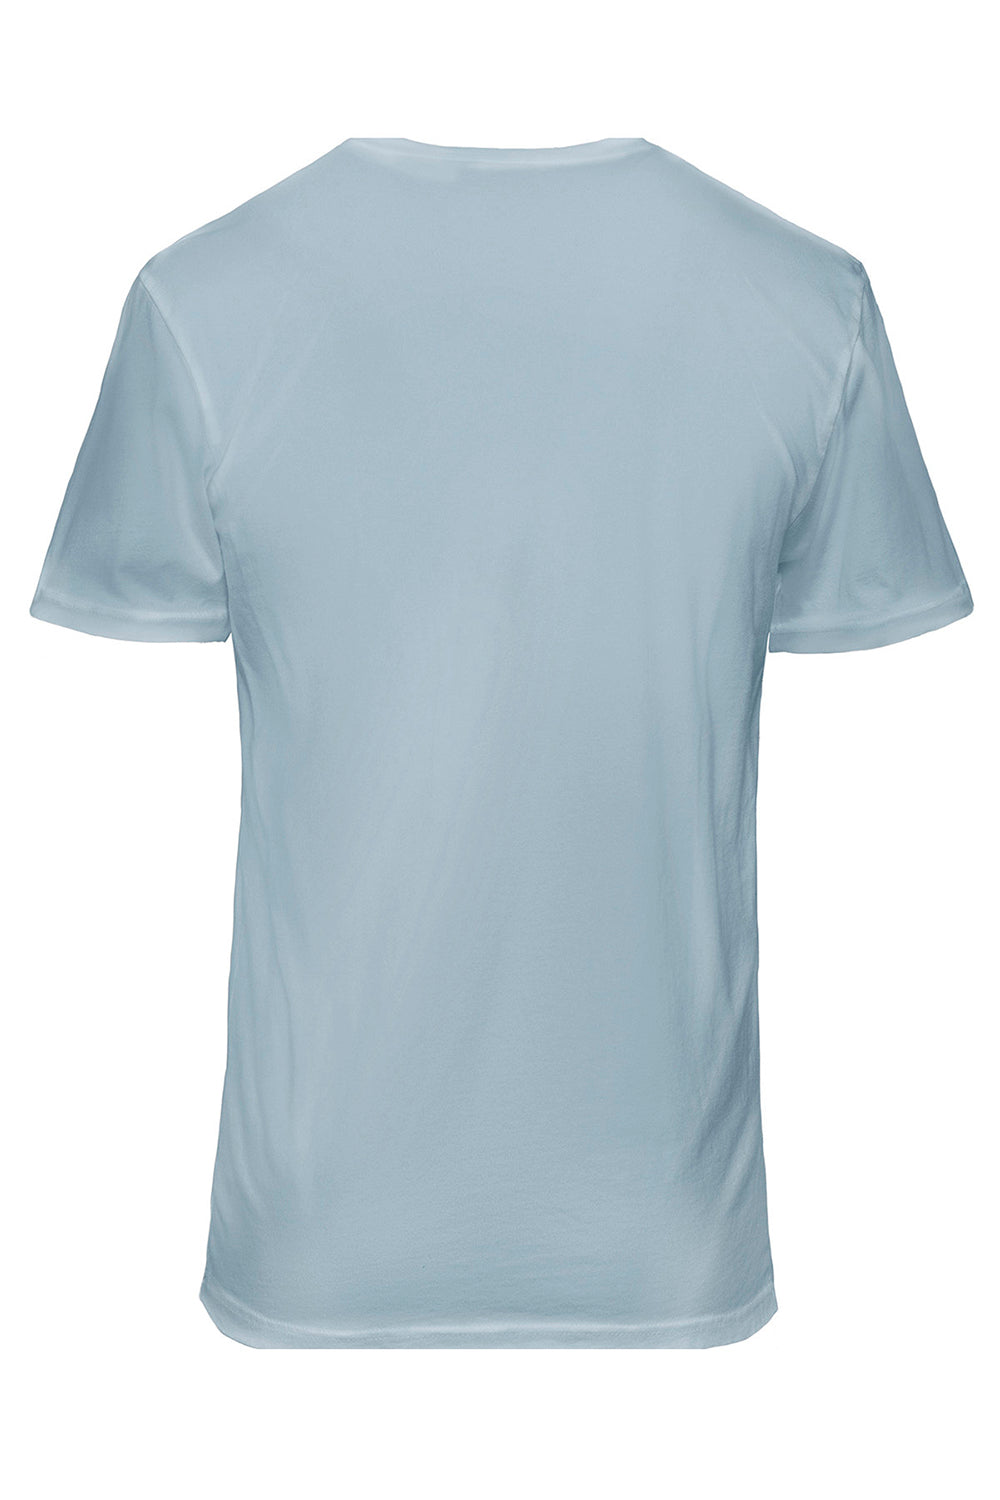 Next Level 3600SW Mens Soft Wash Short Sleeve Crewneck T-Shirt Stonewashed Denim Blue Flat Back